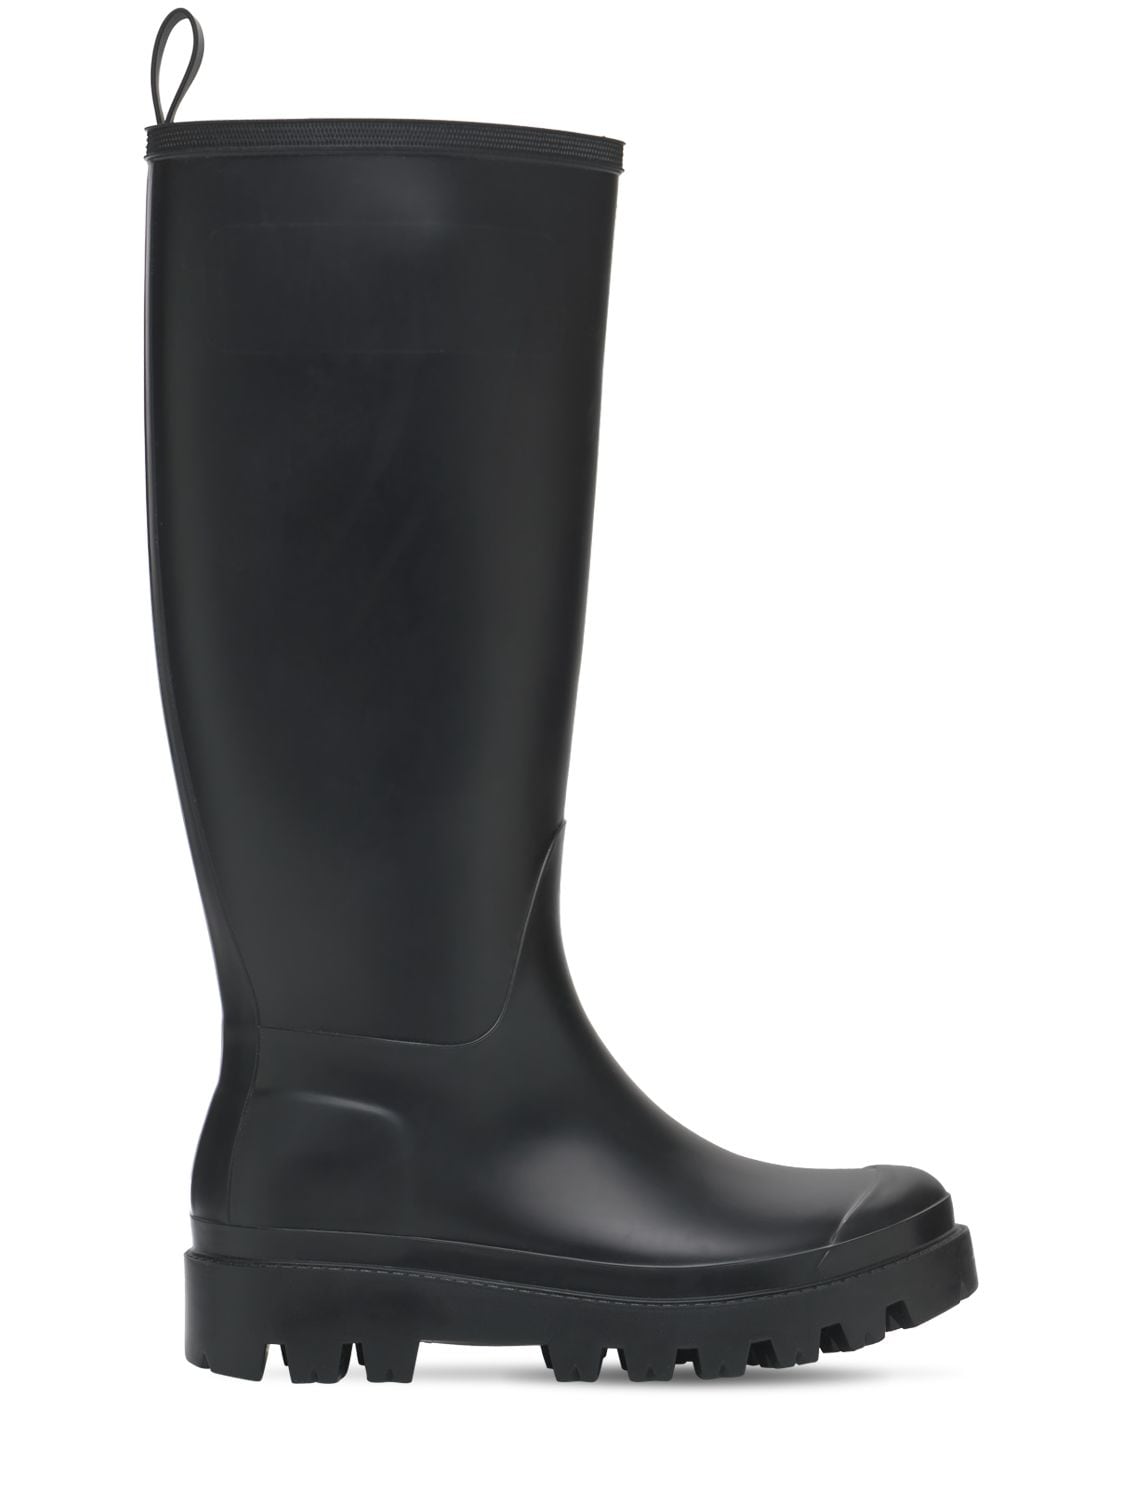 GIA BORGHINI 30mm Giove Bis Tall Rubber Rain Boots